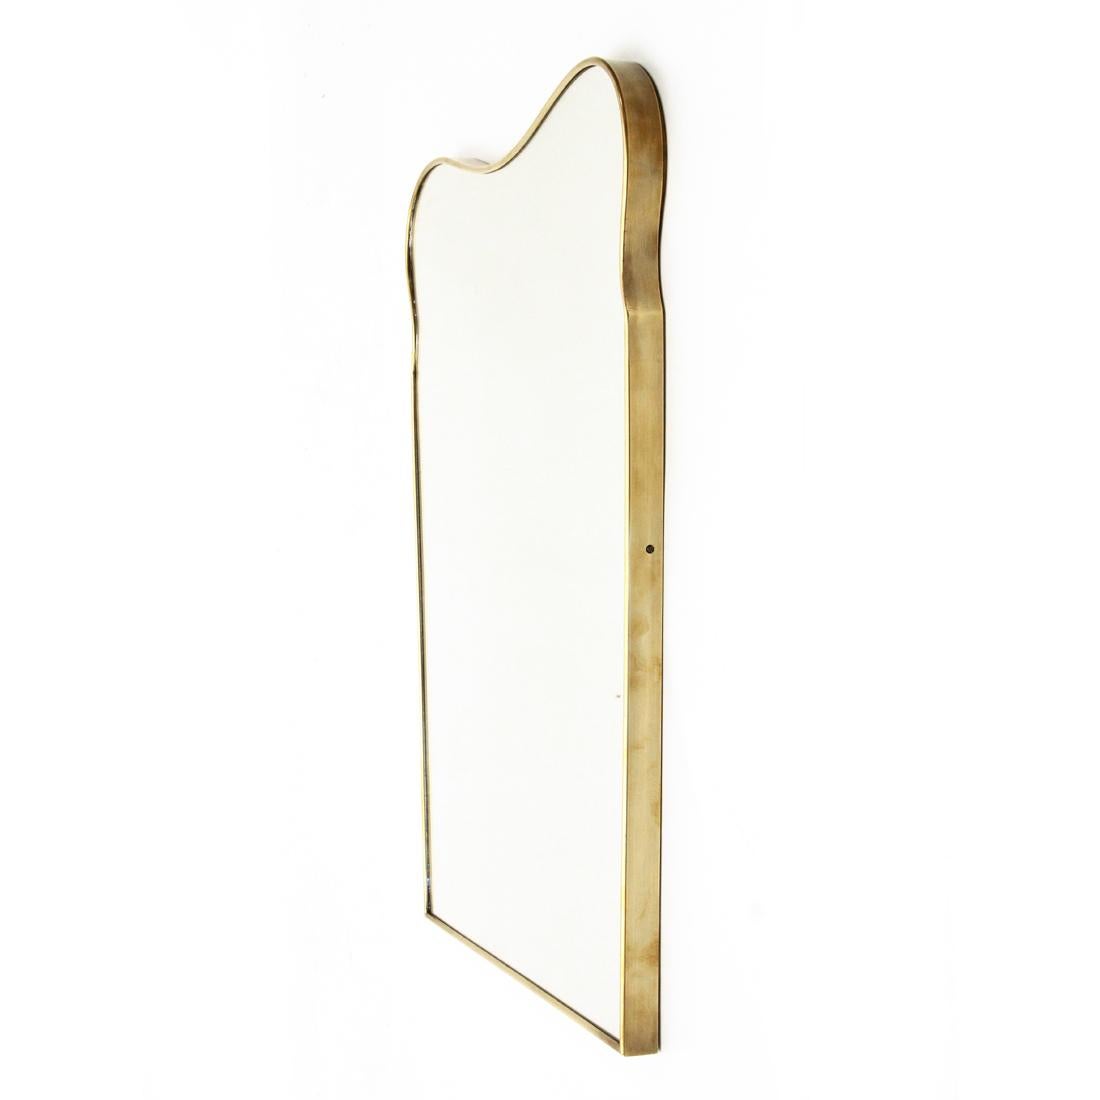 Mid-20th Century Italian Modern Brass Mirror, 1950s